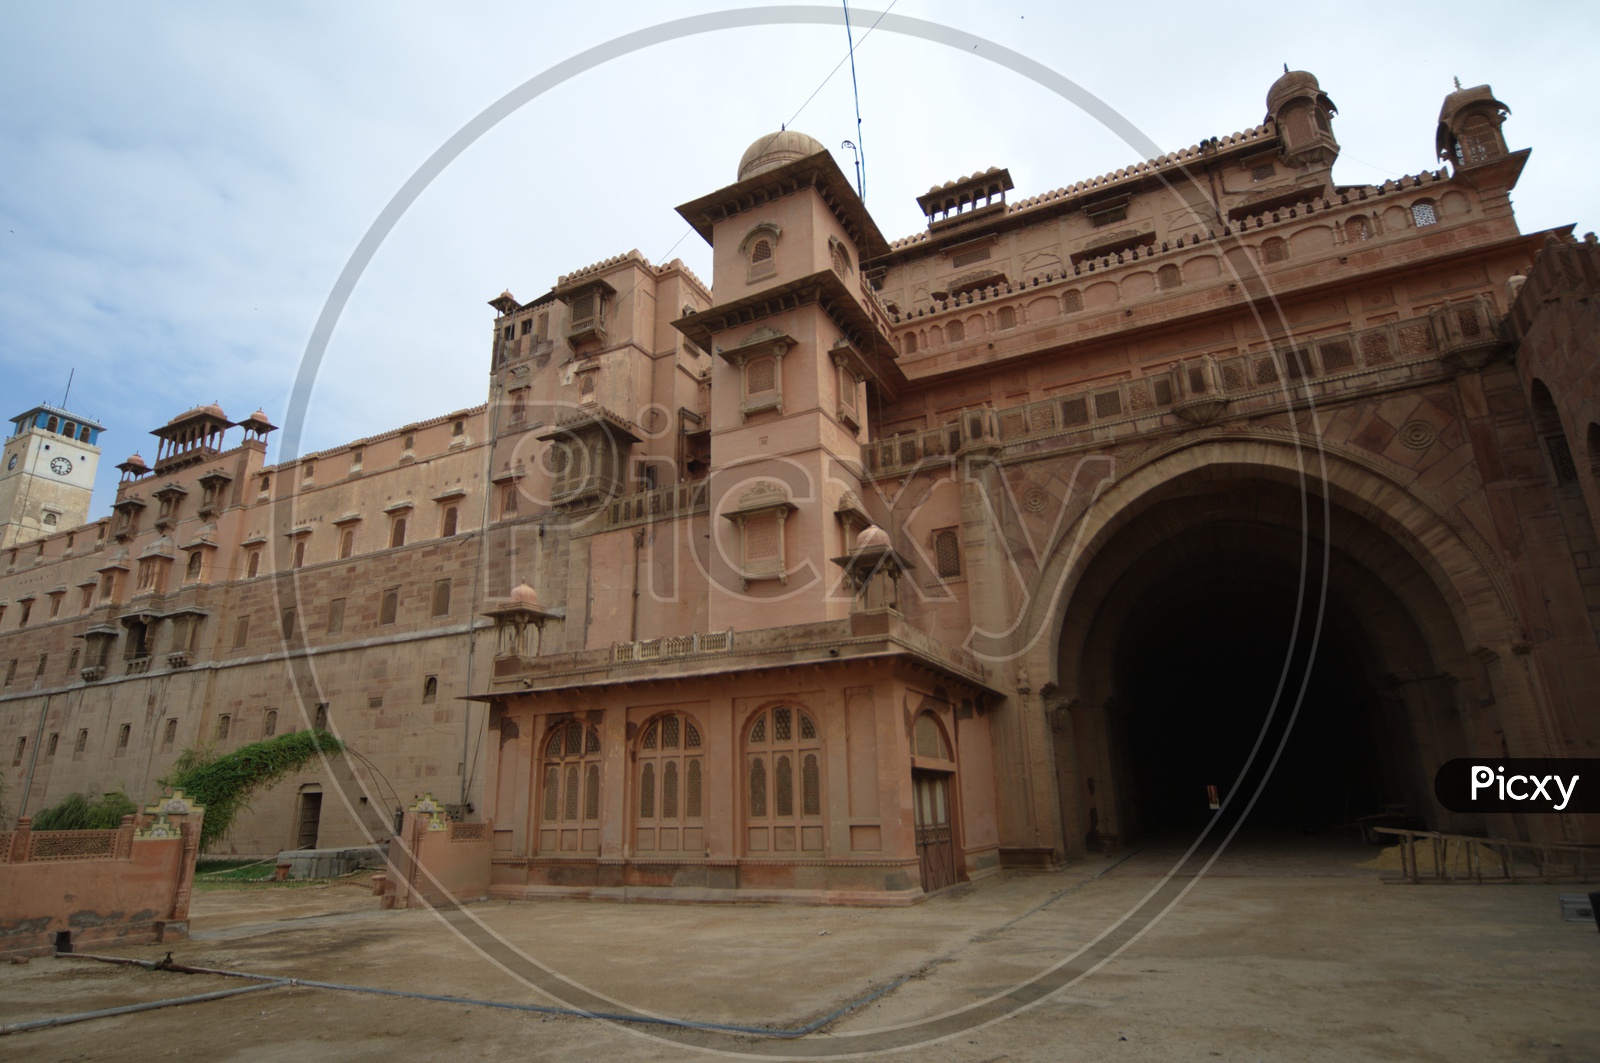 Architecture of Junagarh Fort